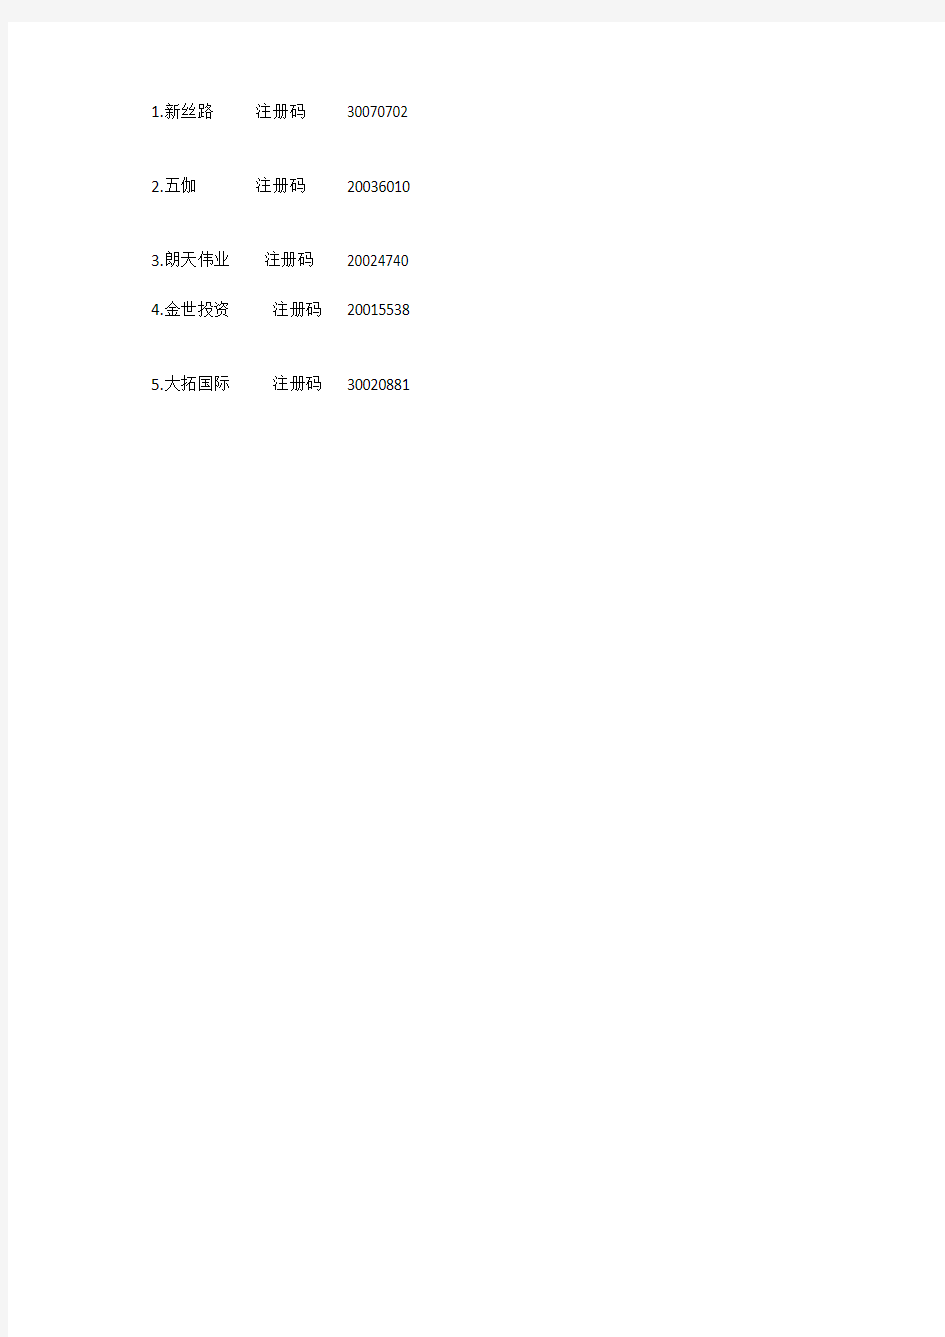 深圳国税网上申报系统注册码